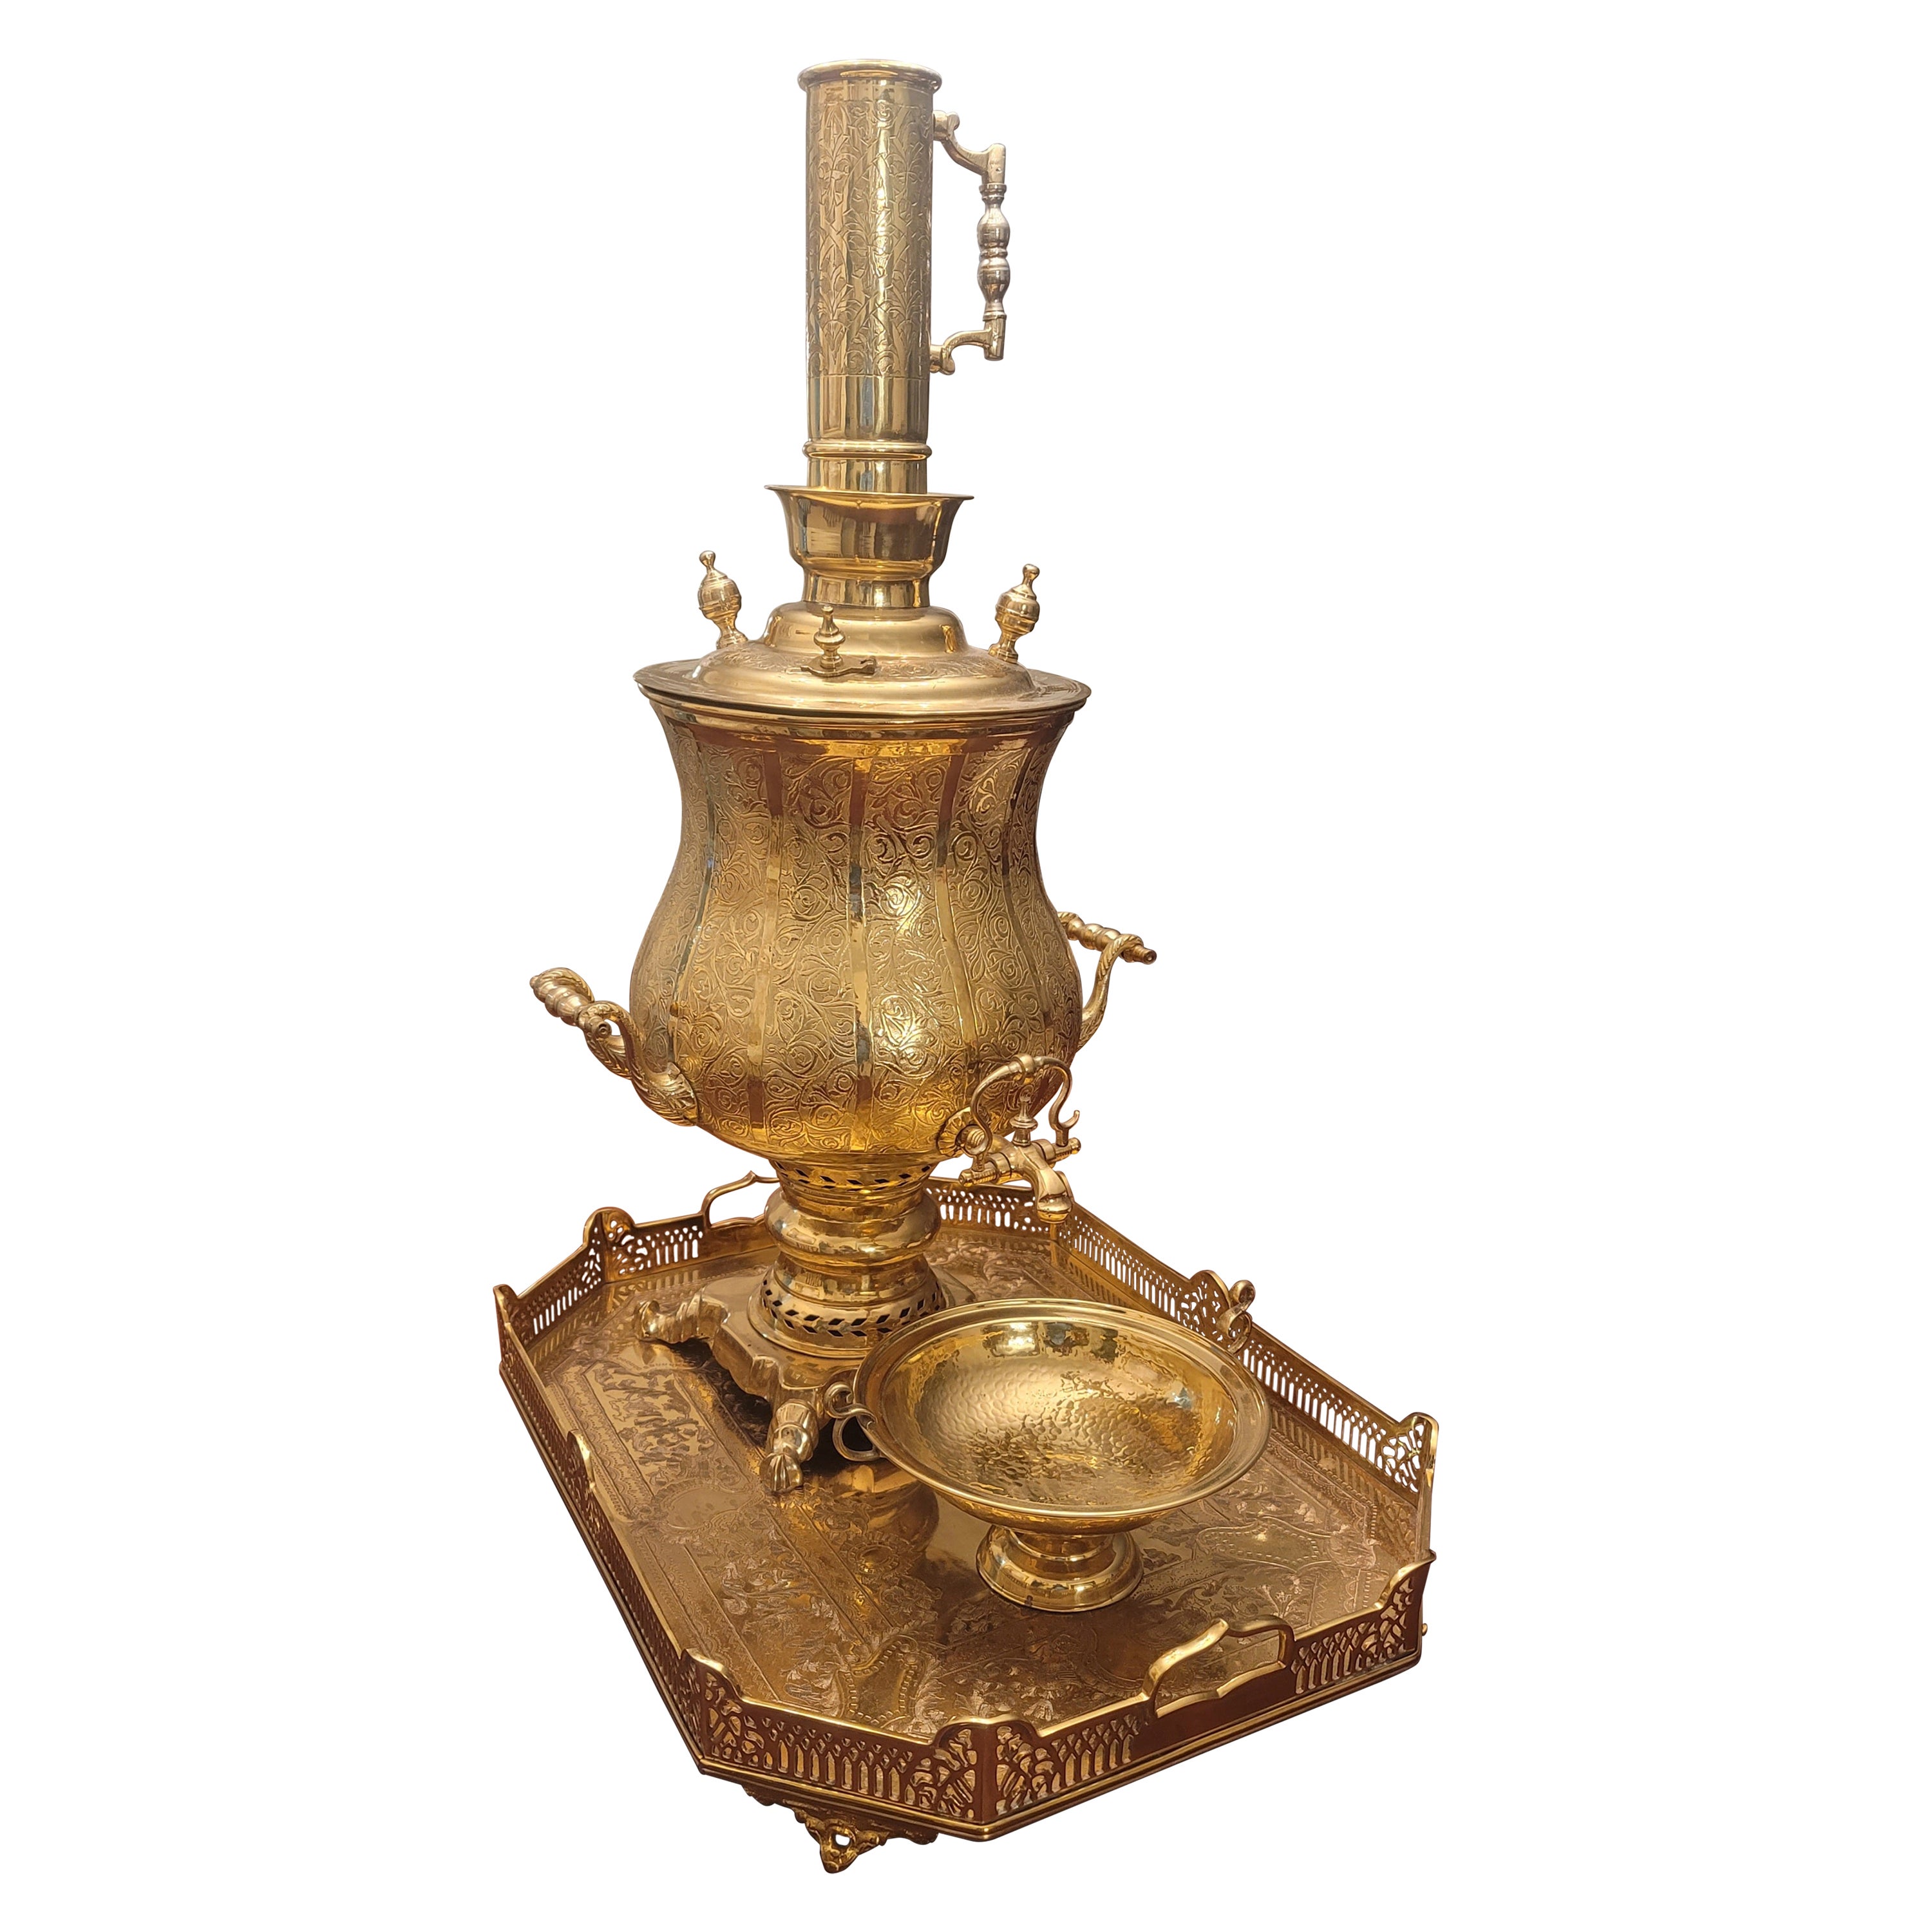 Large Ornate Engraved and Polished Brass Decorative Samovar Set For Sale